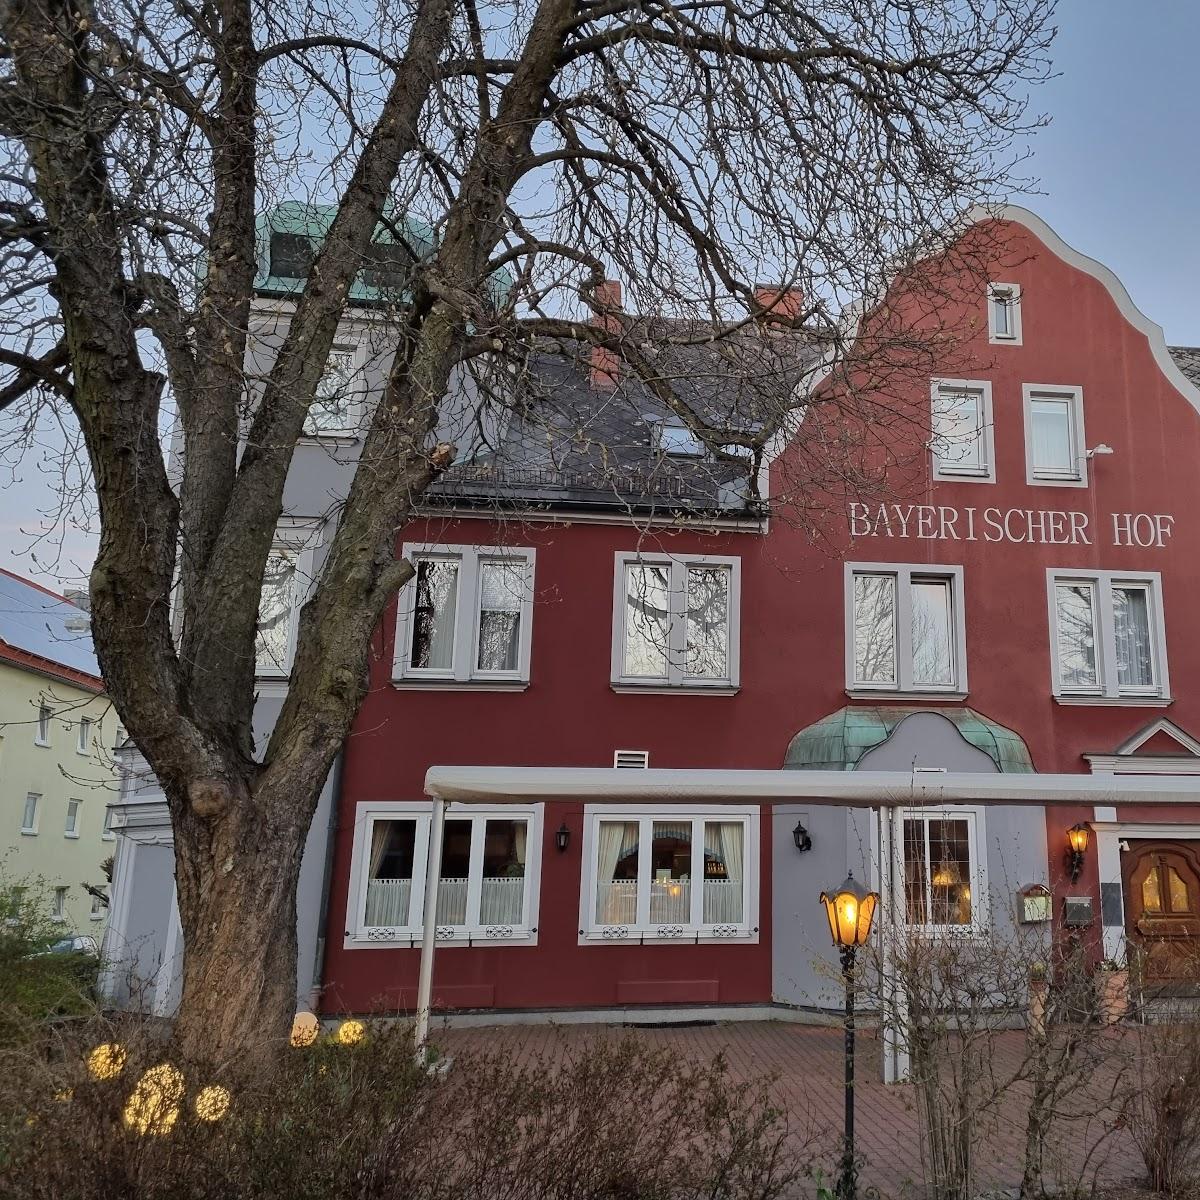 Restaurant "Hotel Bayerischer Hof" in Waldsassen